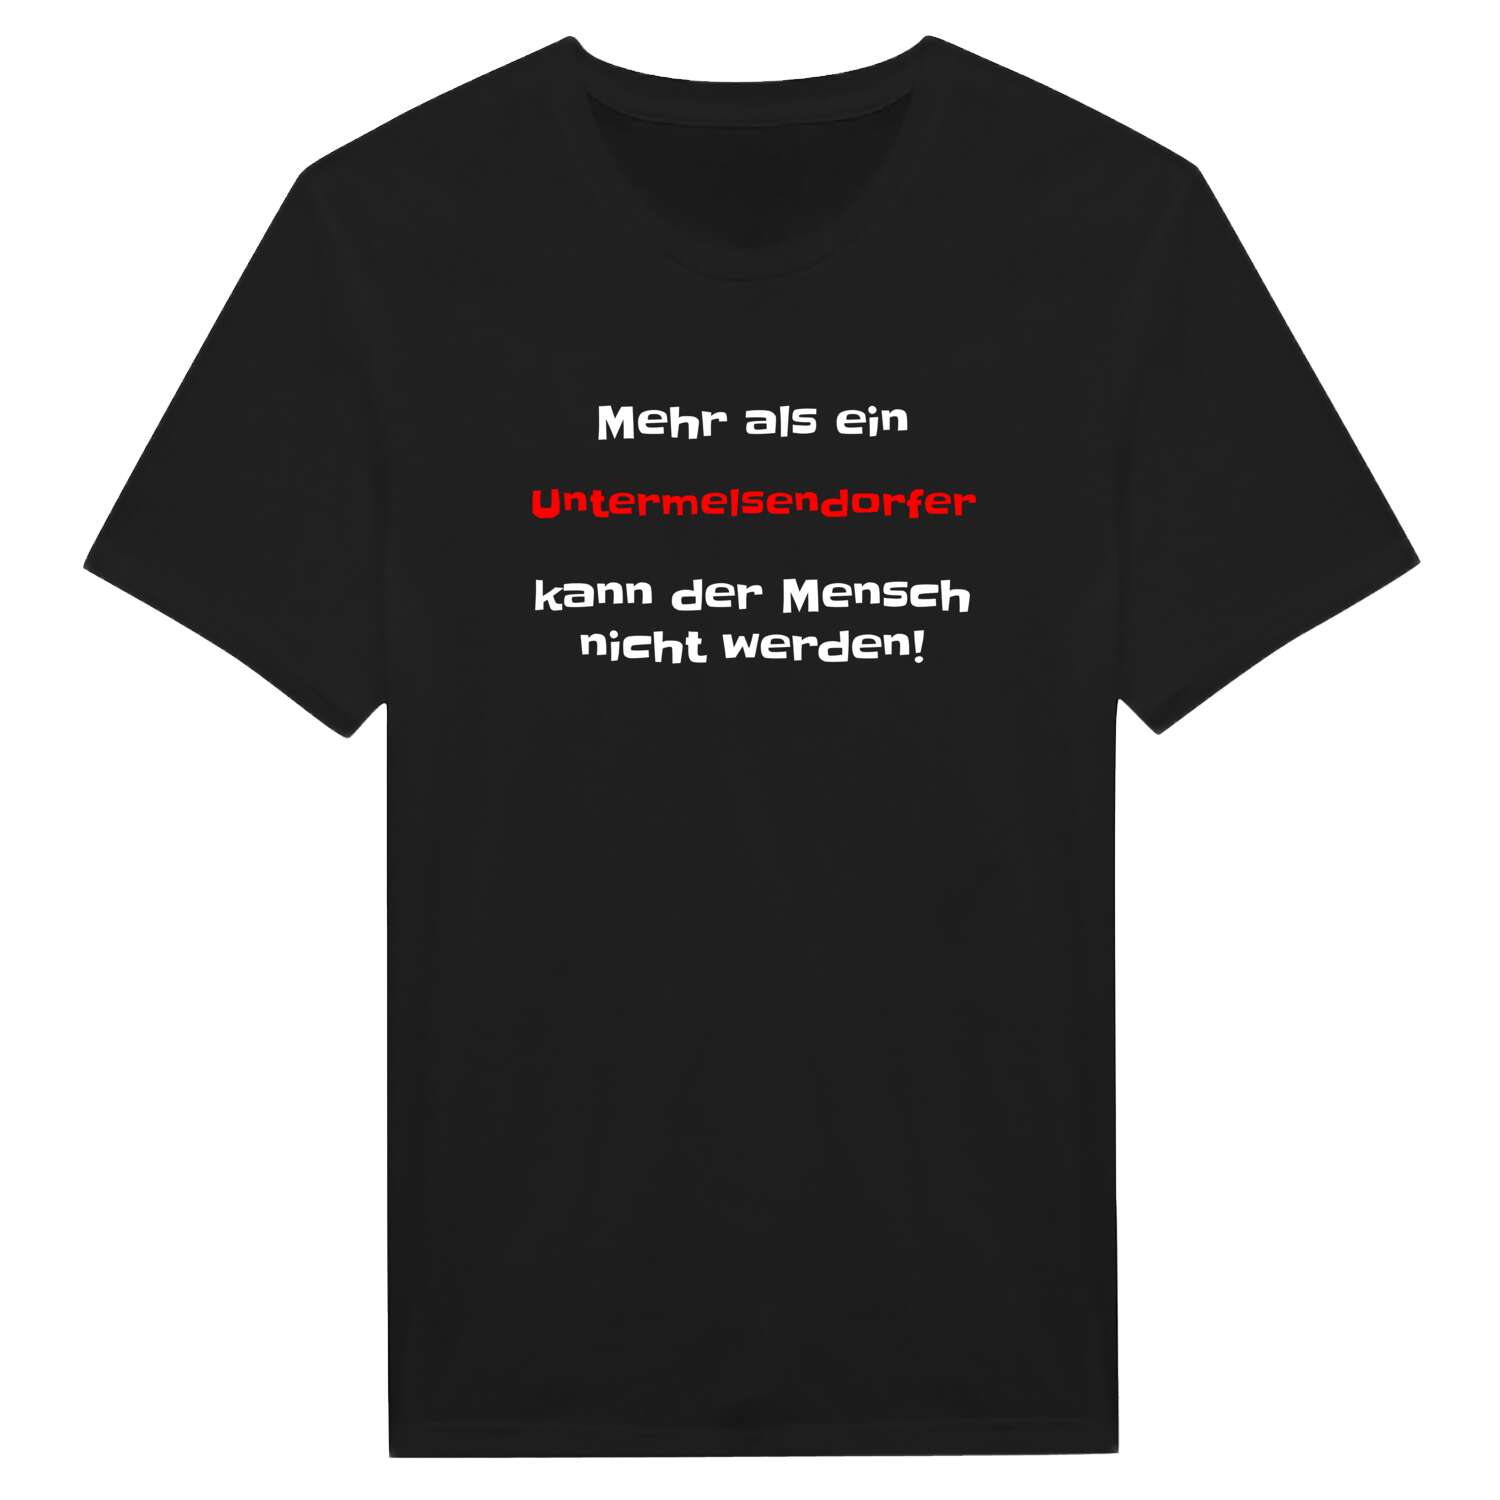 Untermelsendorf T-Shirt »Mehr als ein«